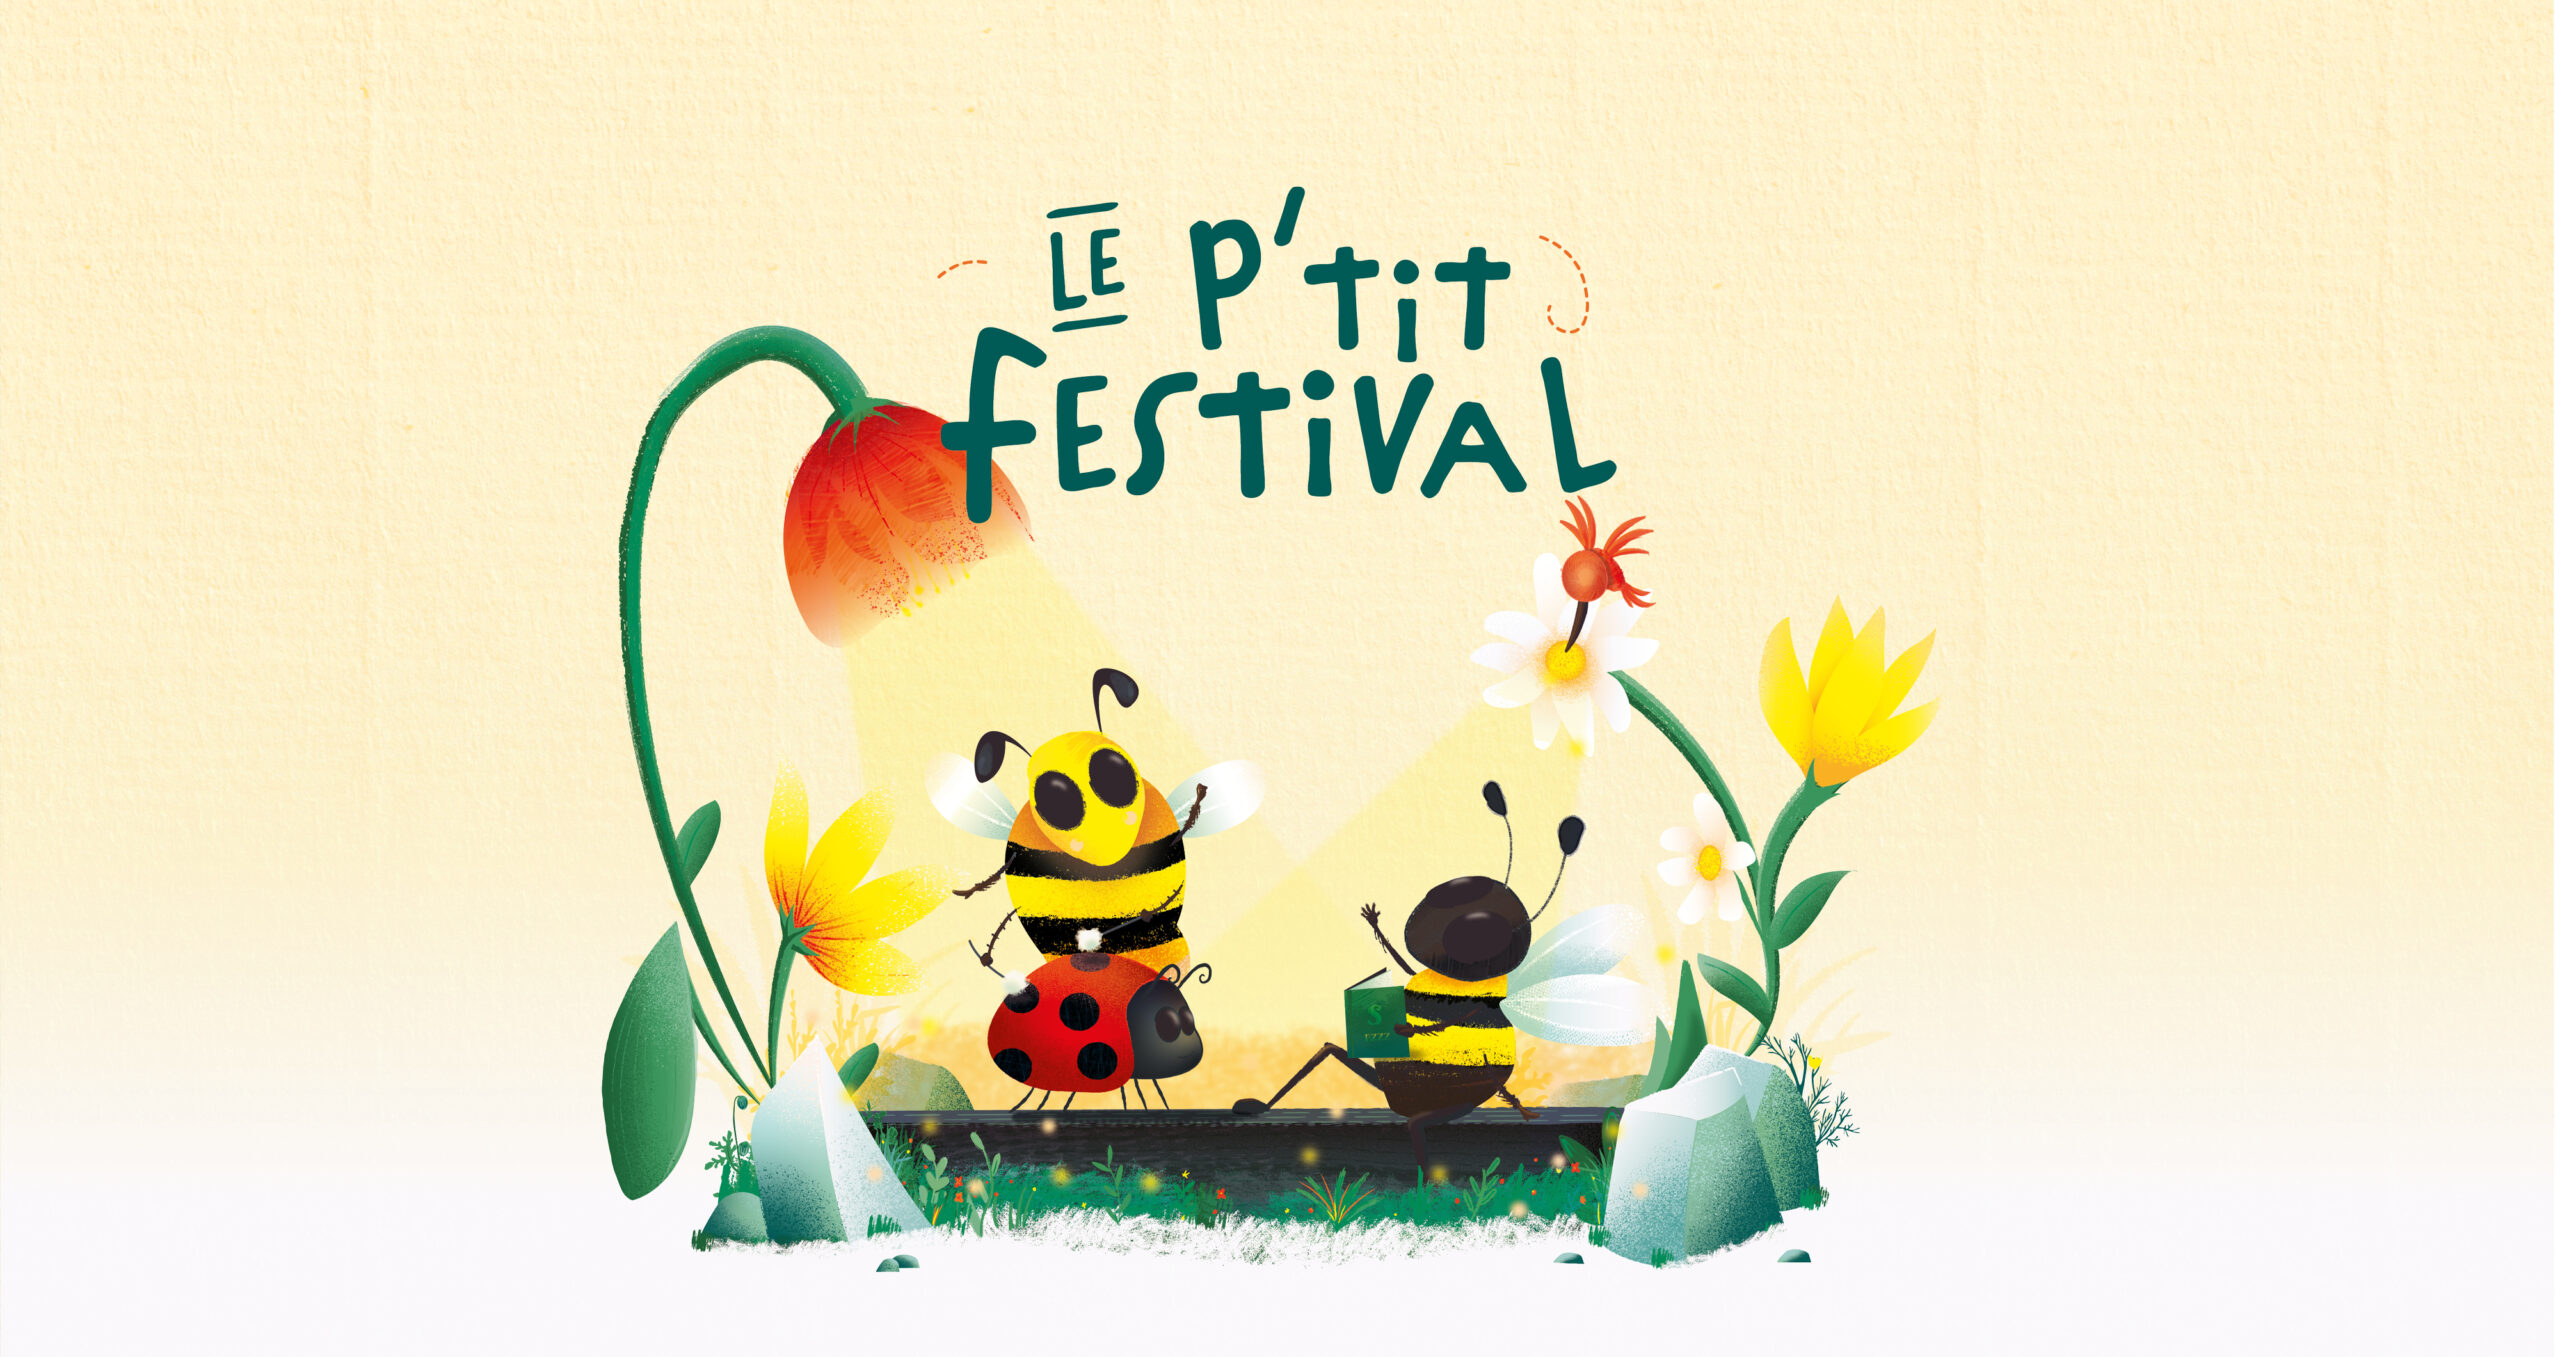 Le P'tit Festival